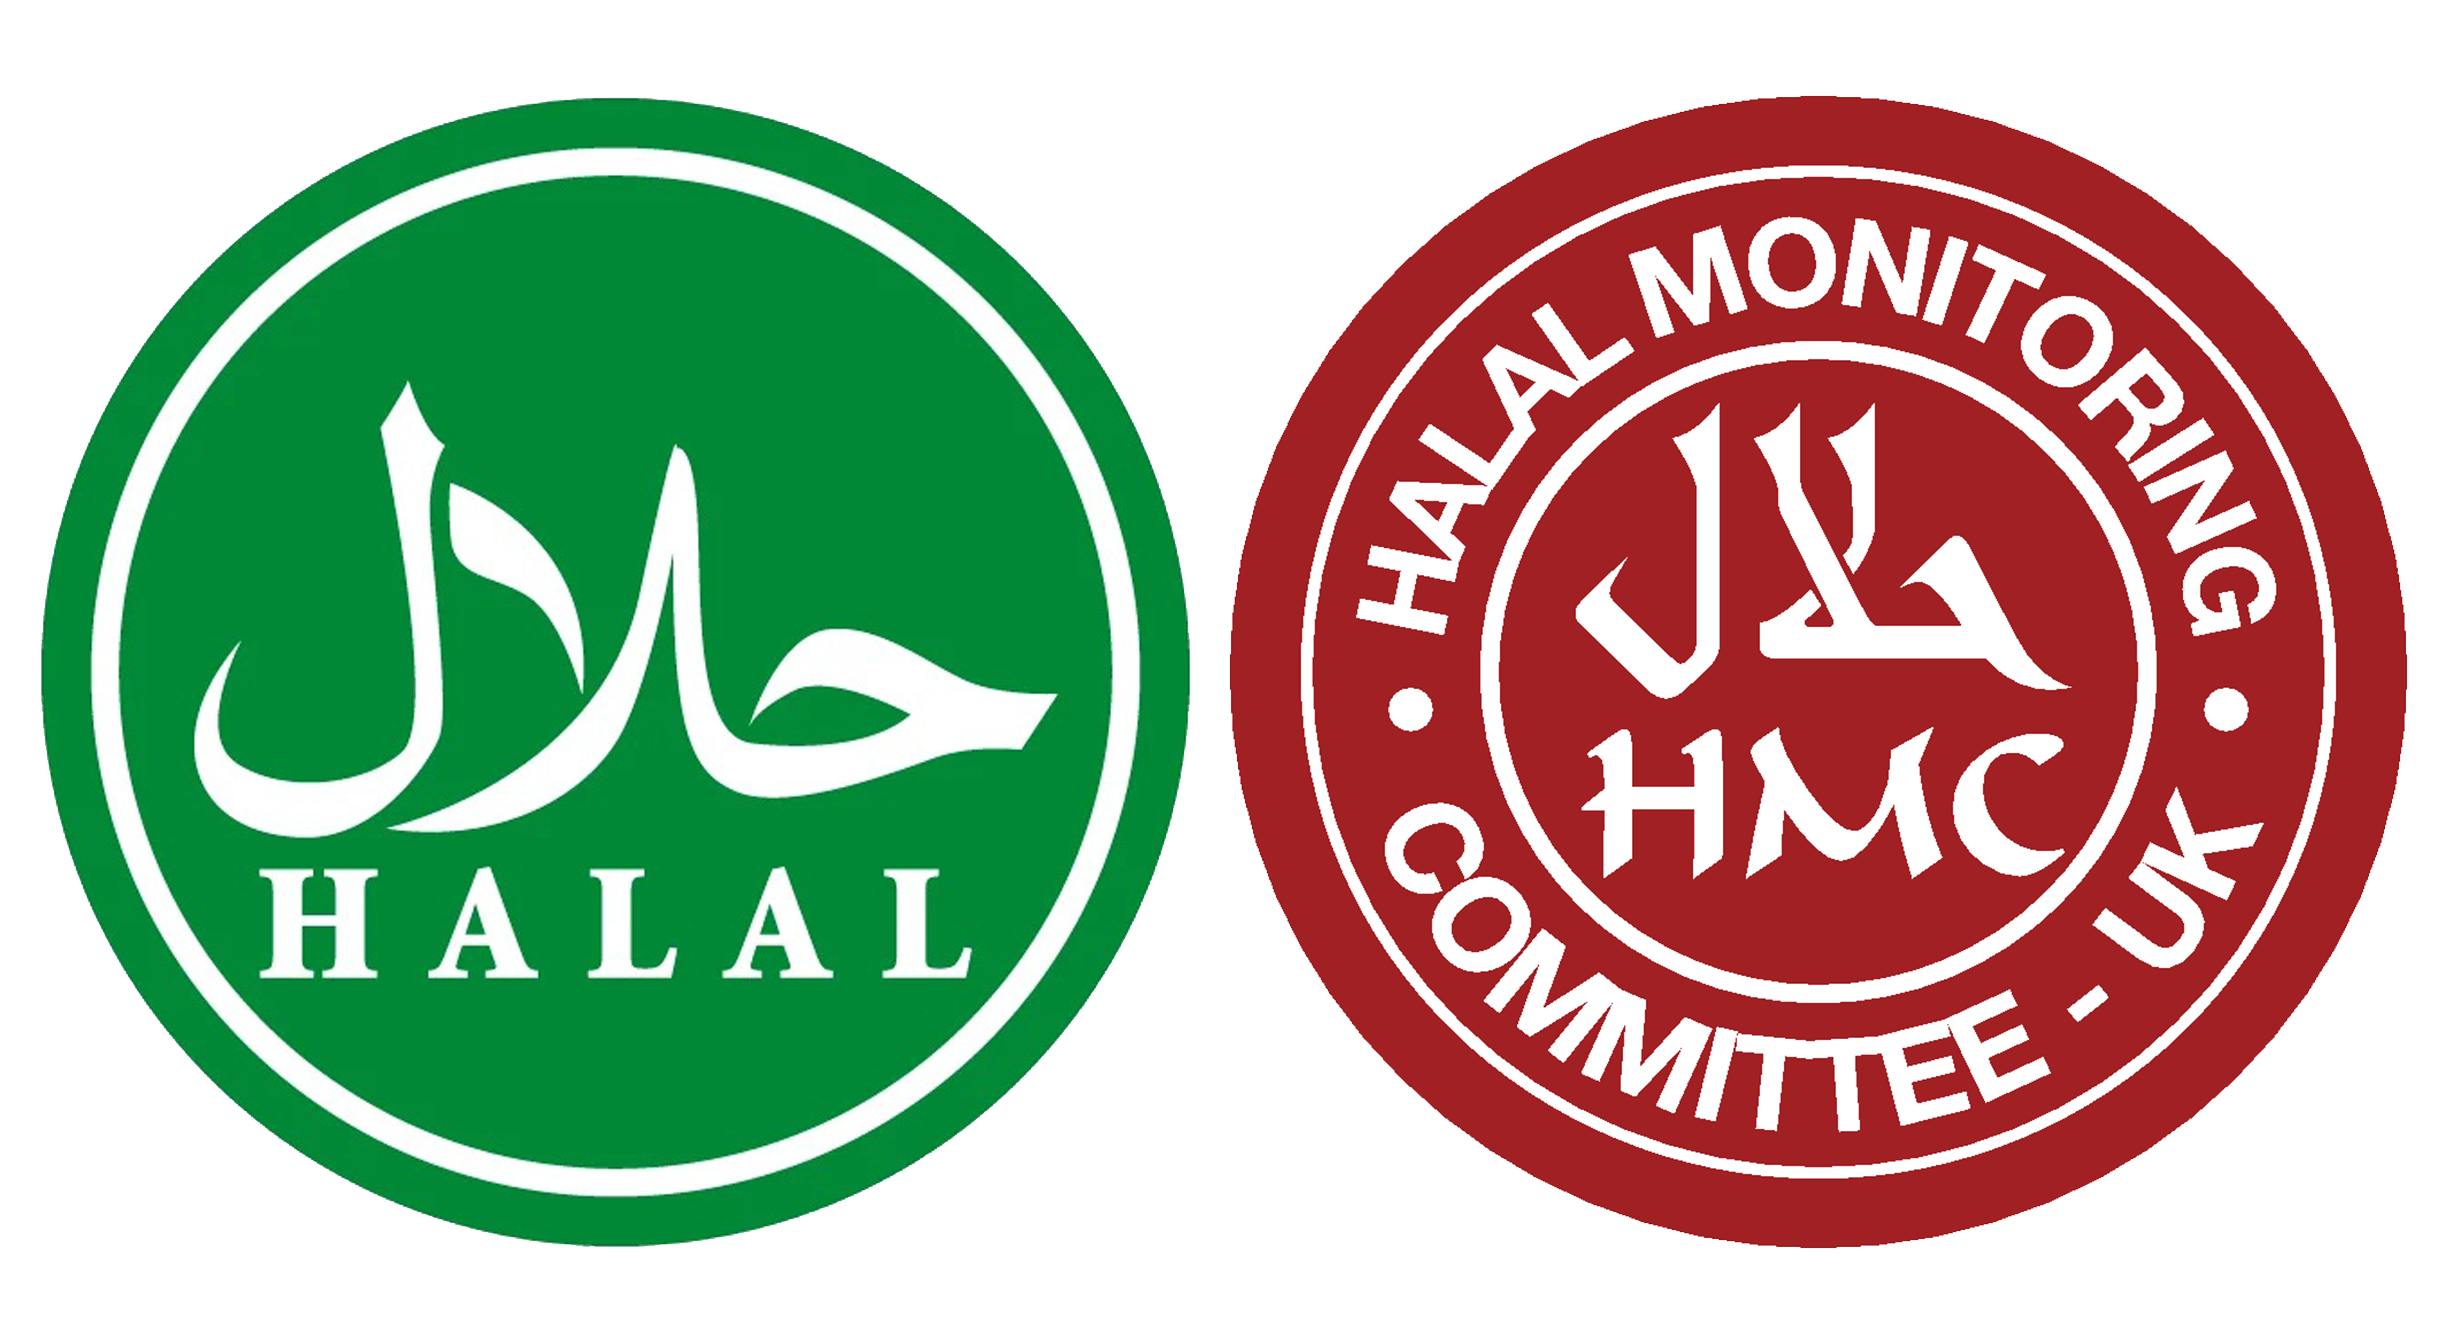 United Halal Foods